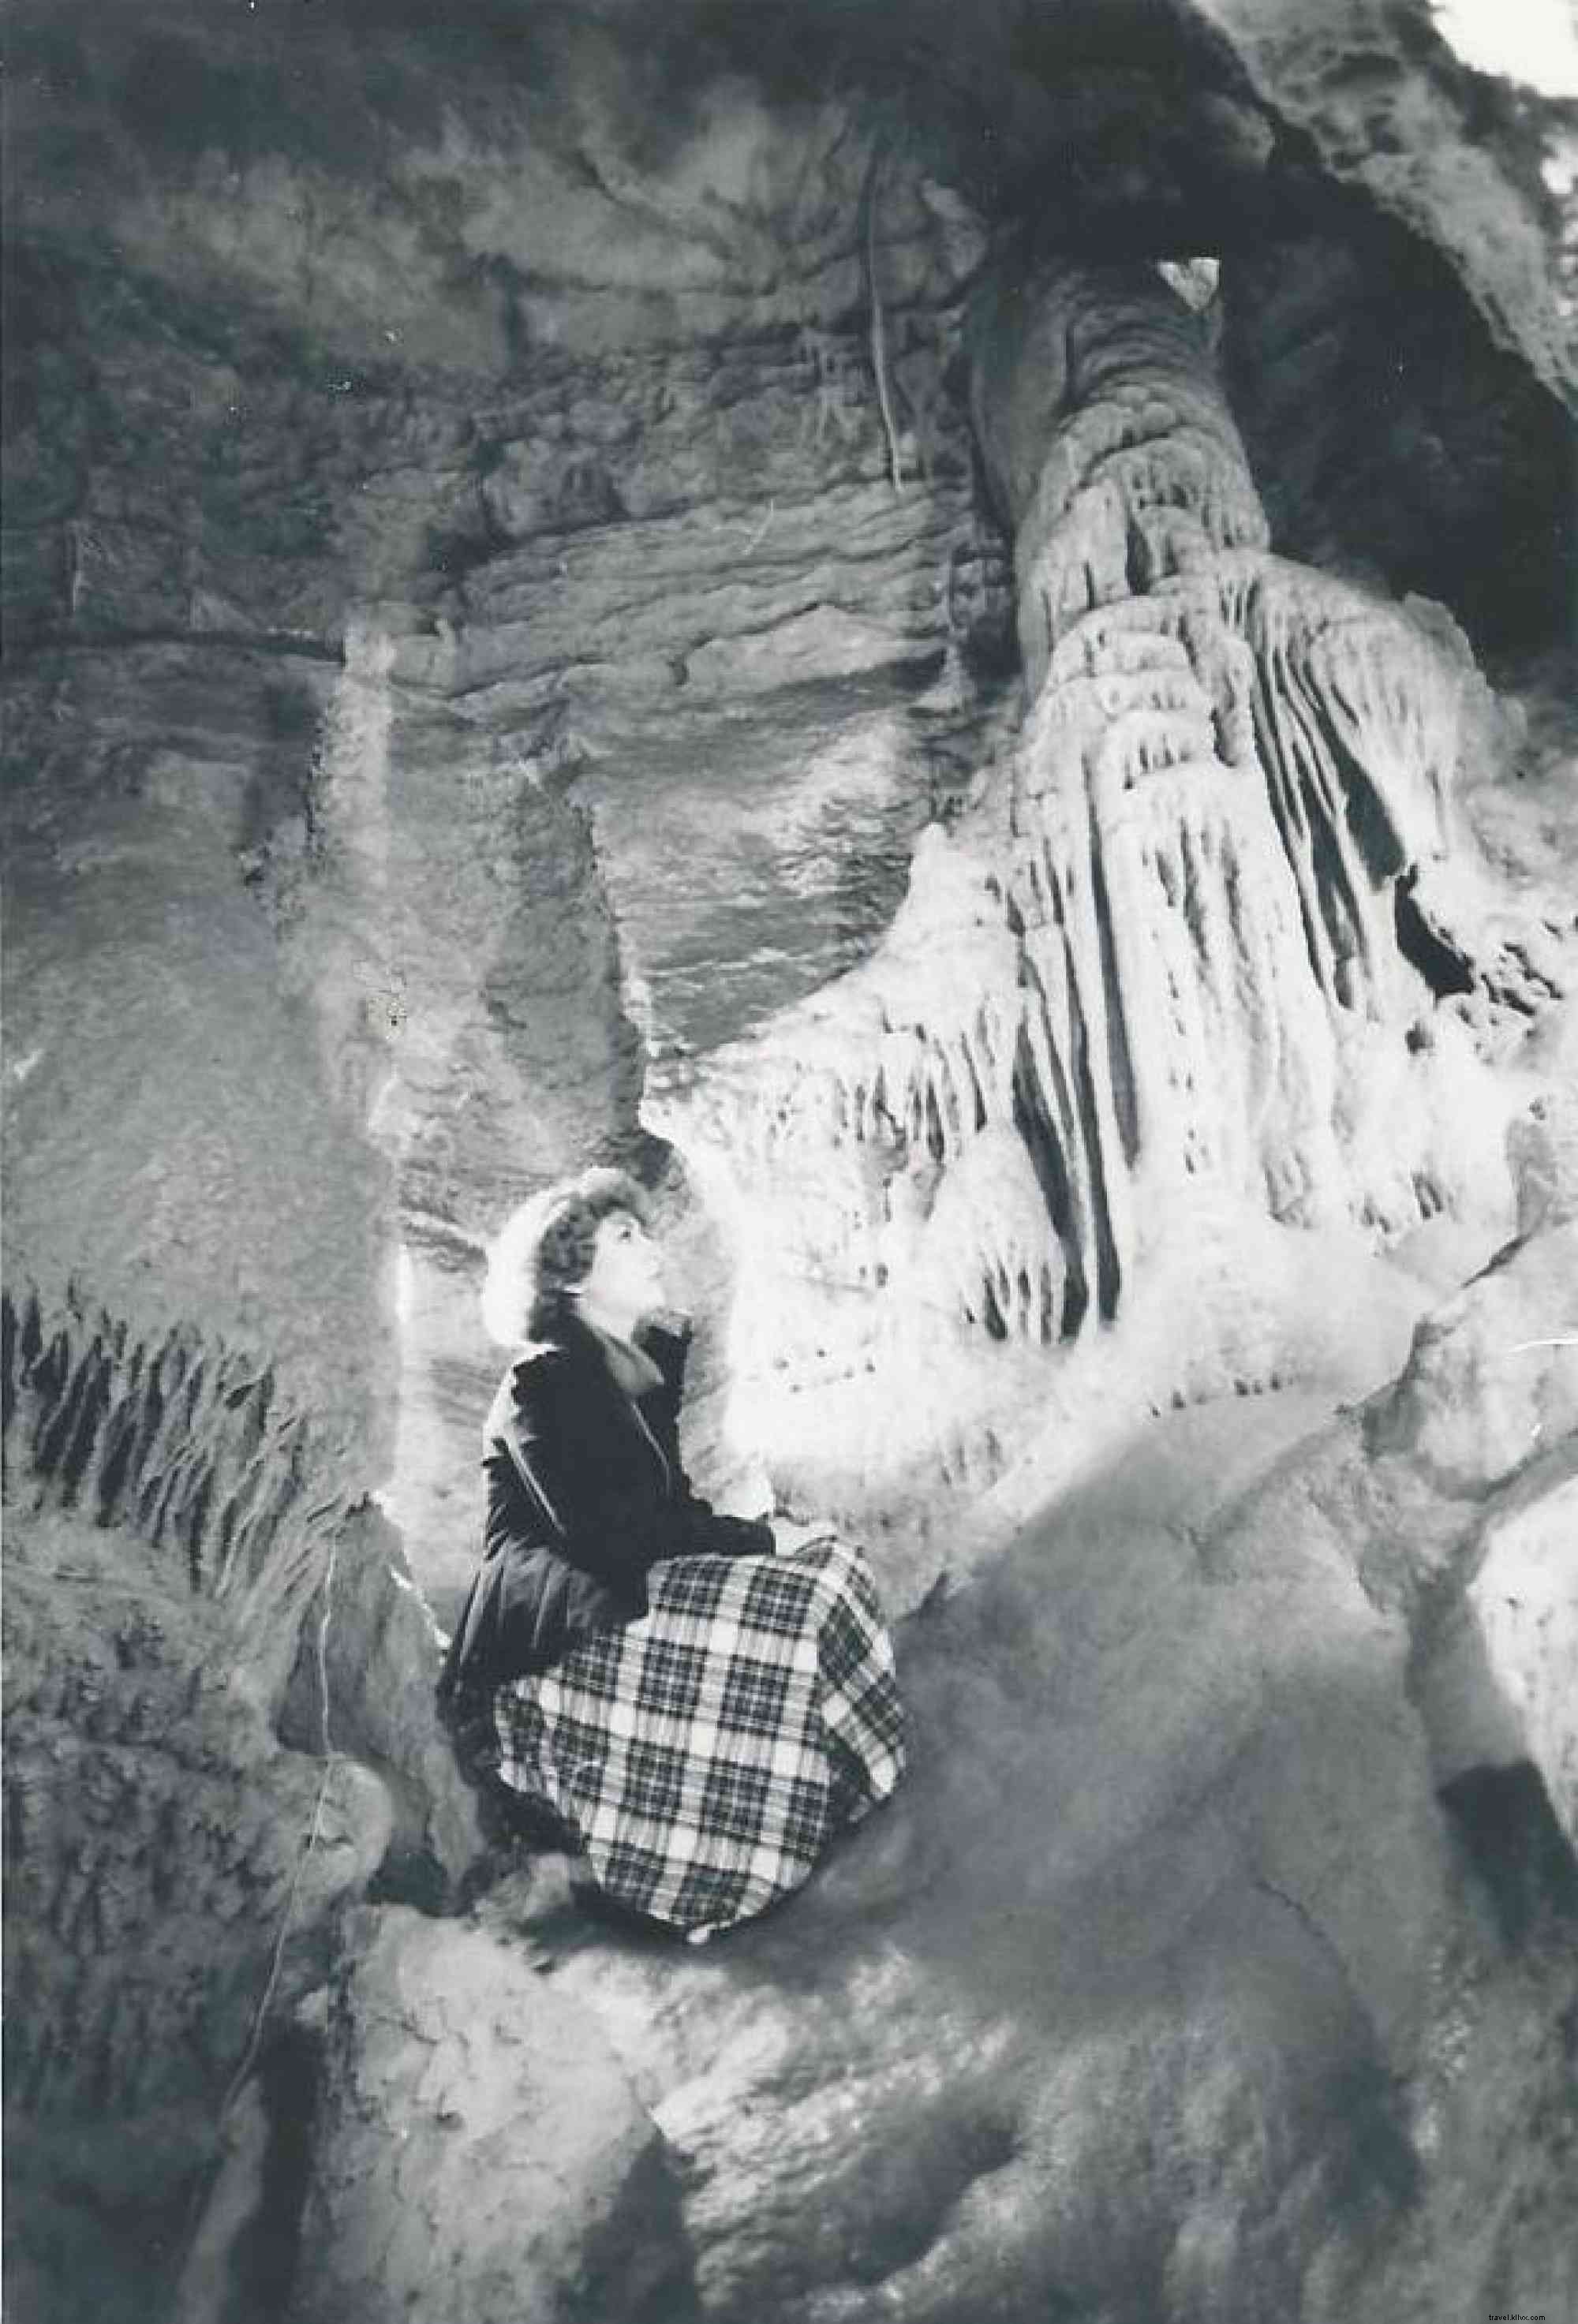 incoln Caverns merayakan 90 tahun penemuan 